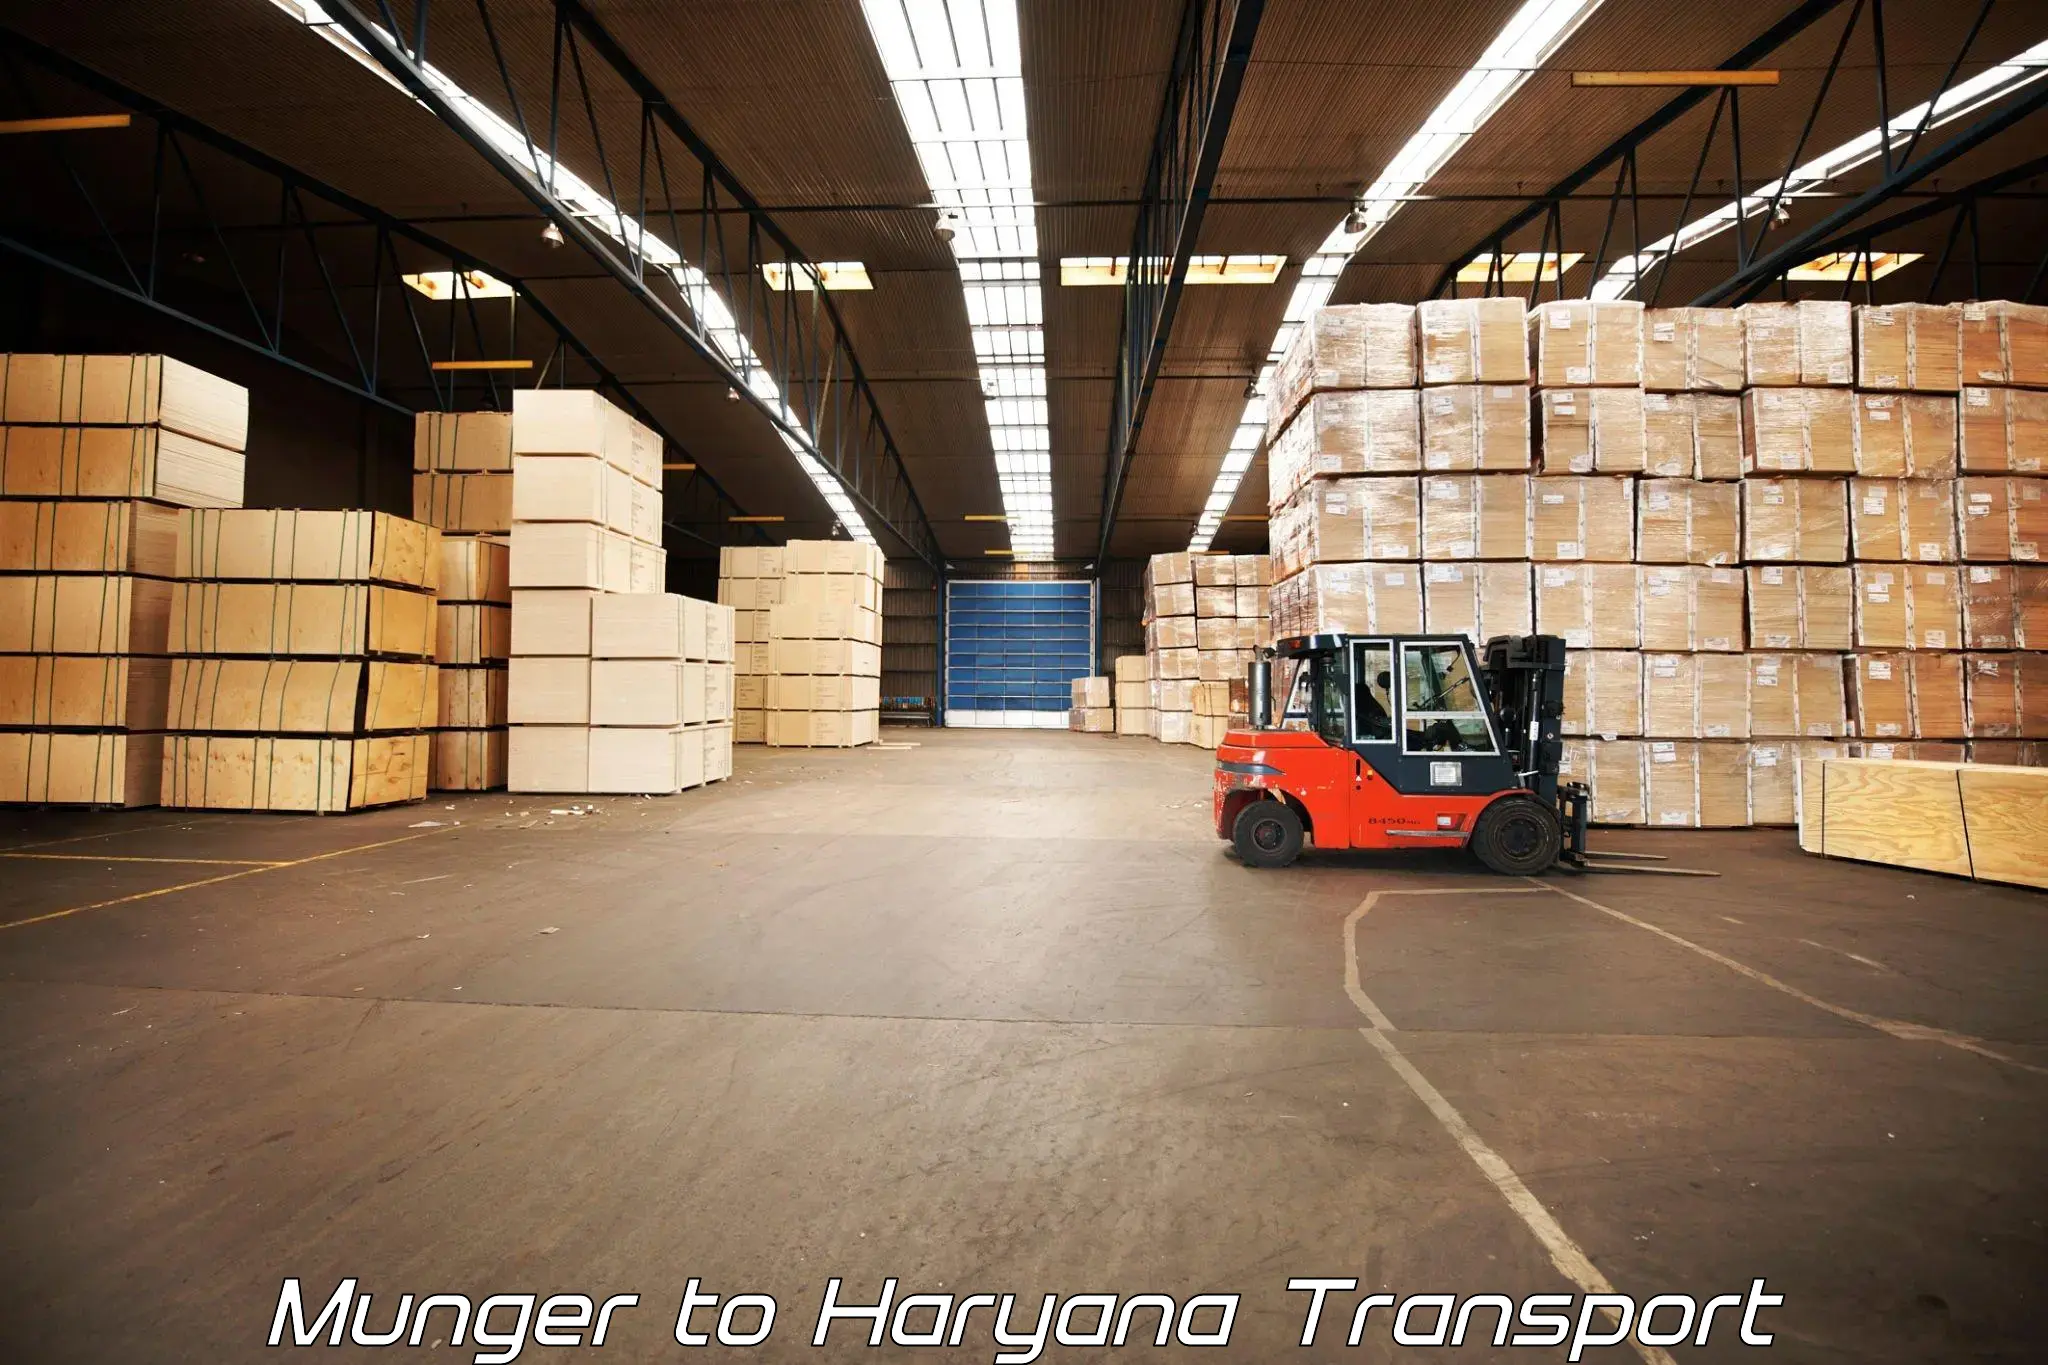 Transport in sharing Munger to Haryana